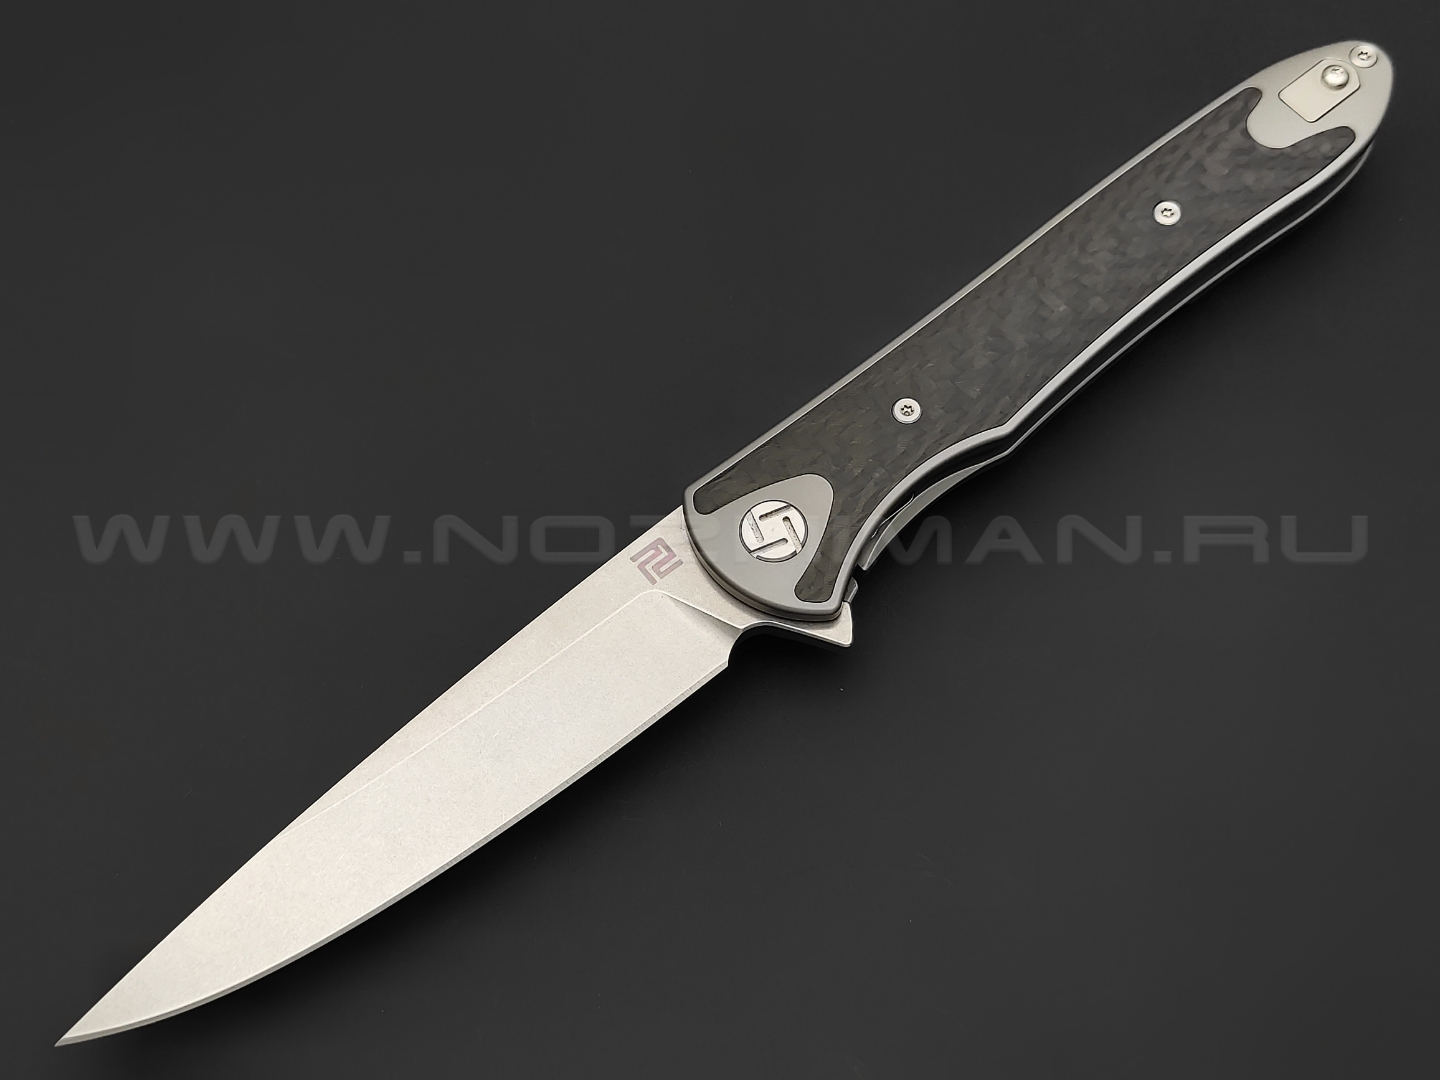 Нож Artisan Cutlery Shark 1707G-GY сталь S35VN, рукоять Titanium, Carbon fiber